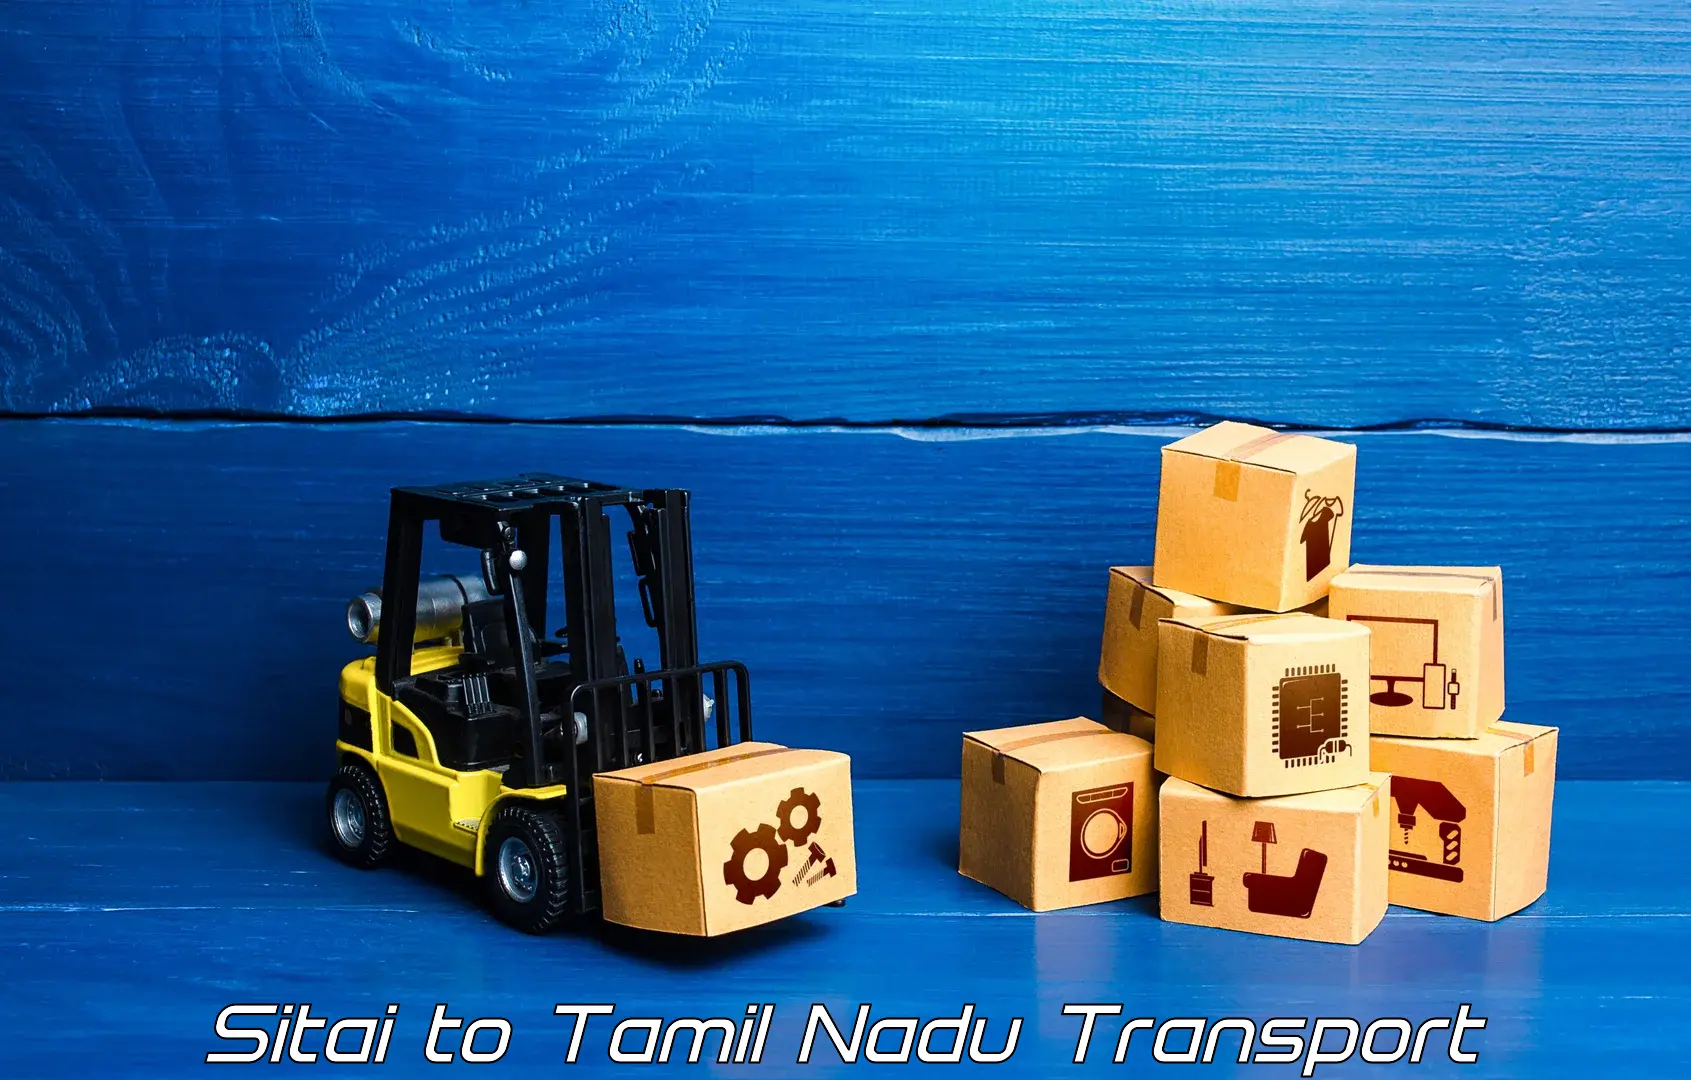 Transport in sharing Sitai to Narikkudi